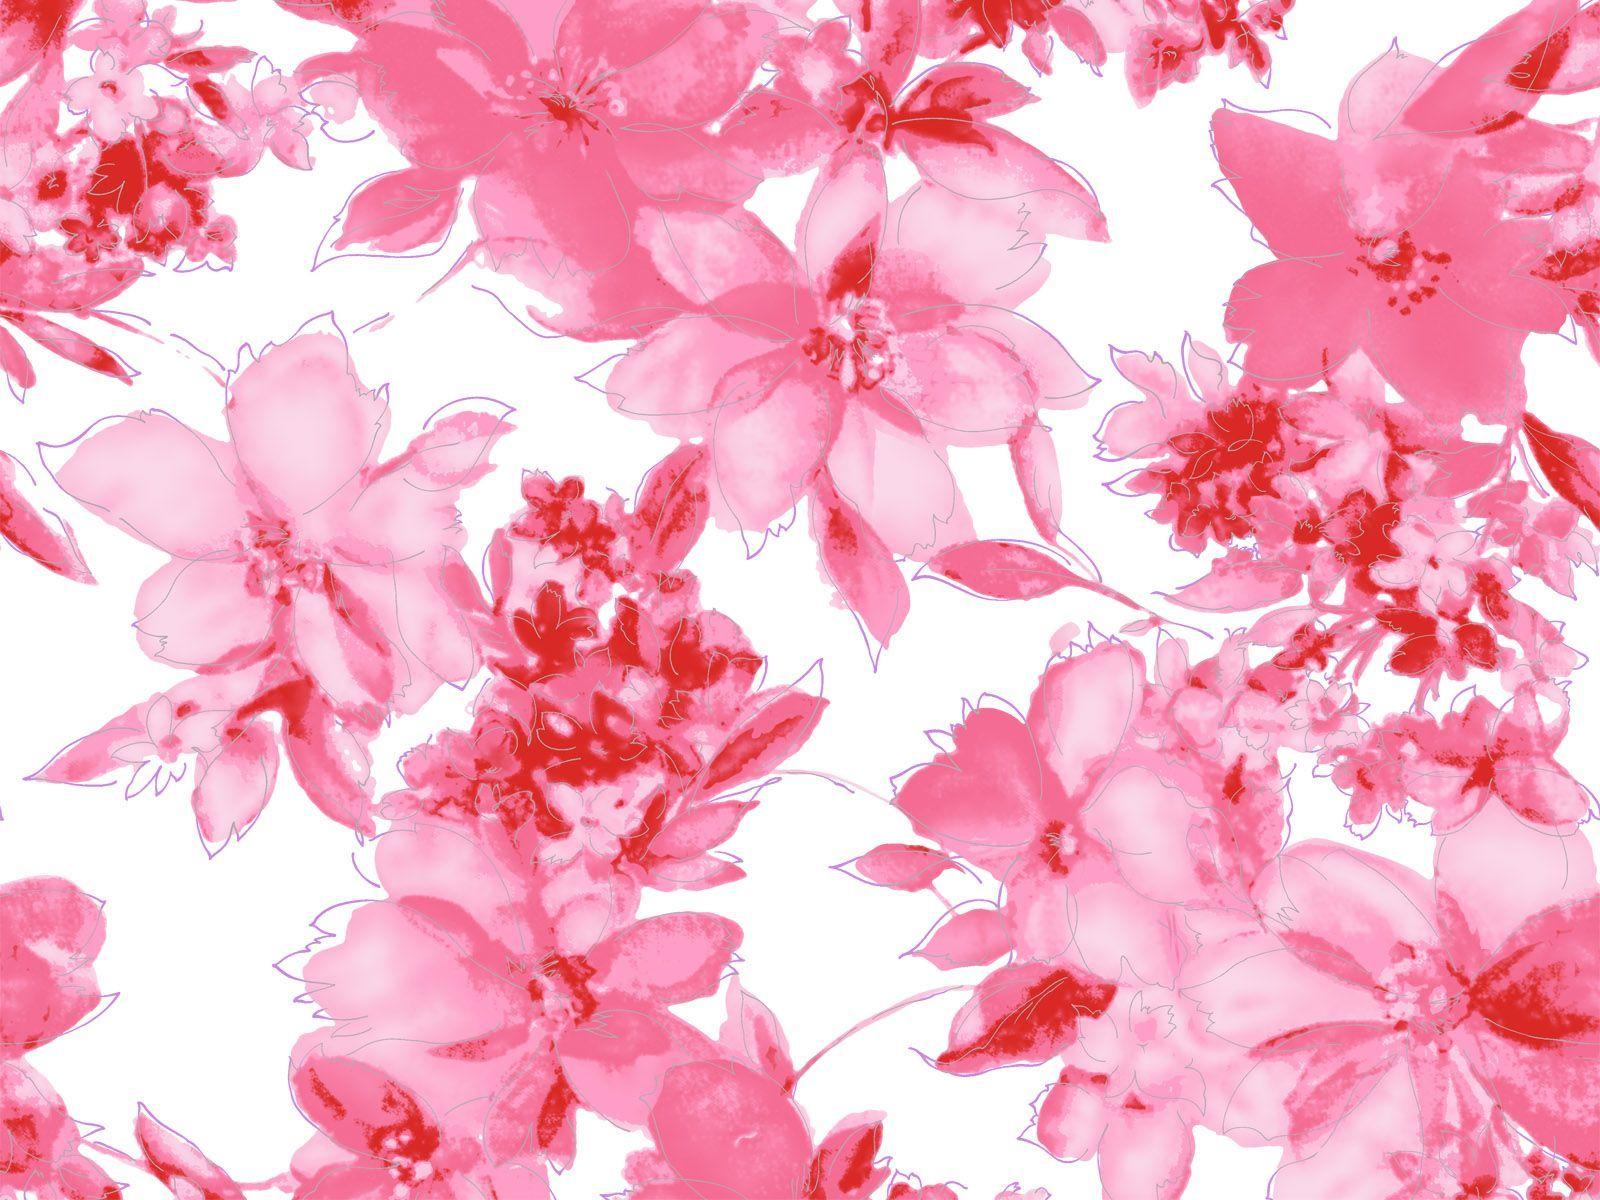 Hot Pink Flowers Background Widescreen 2 HD Wallpaper. aduphoto